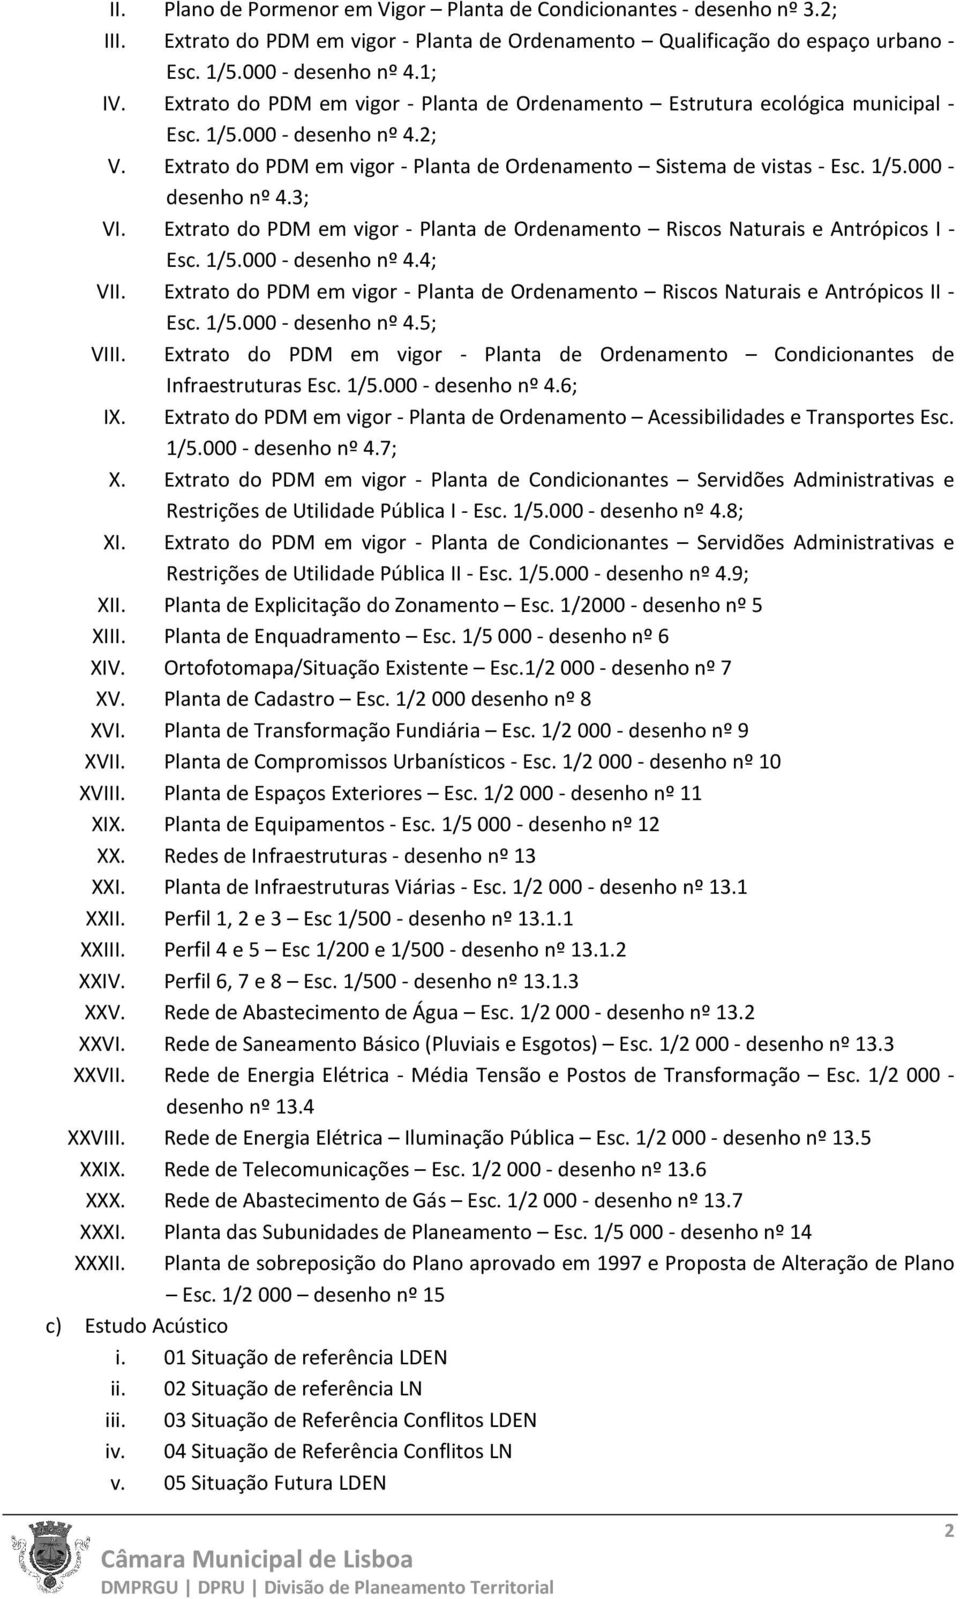 Extrato do PDM em vigor - Planta de Ordenamento Riscos Naturais e Antrópicos I - Esc. 1/5.000 - desenho nº 4.4; VII.